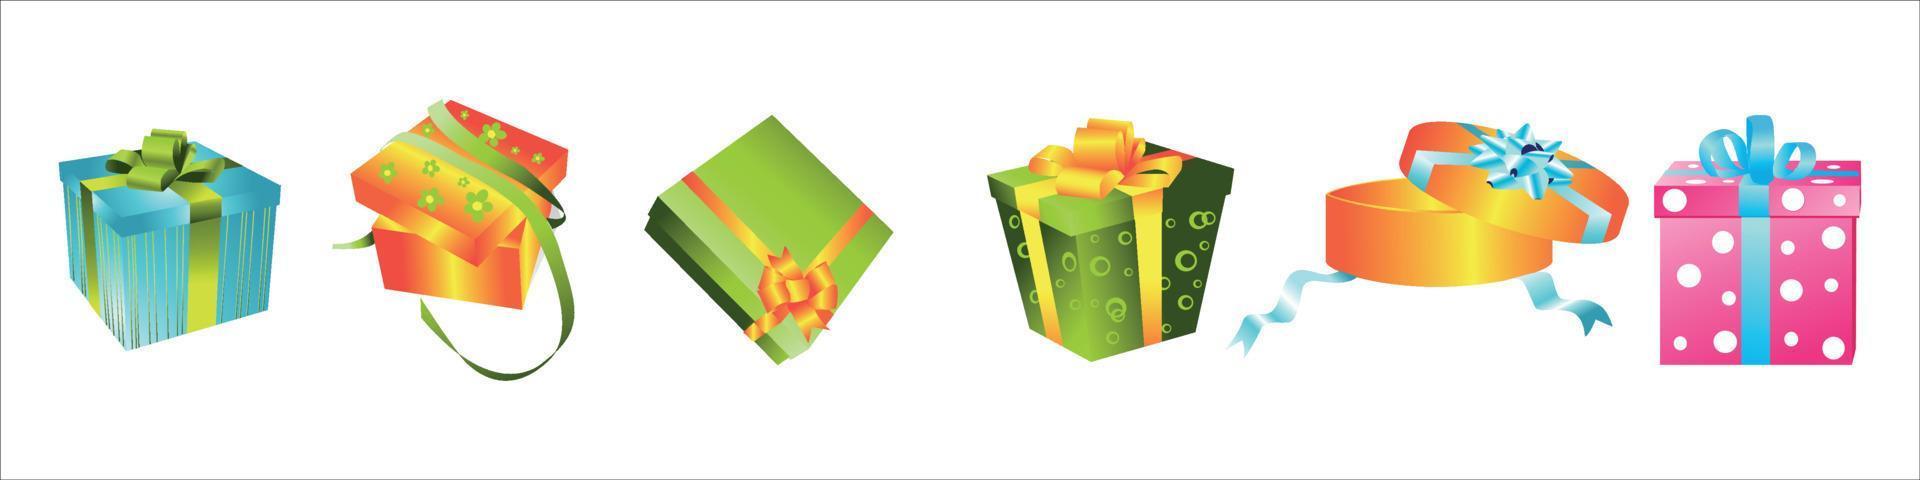 Vektorillustration verschiedener Weihnachtsgeschenkboxen vektor